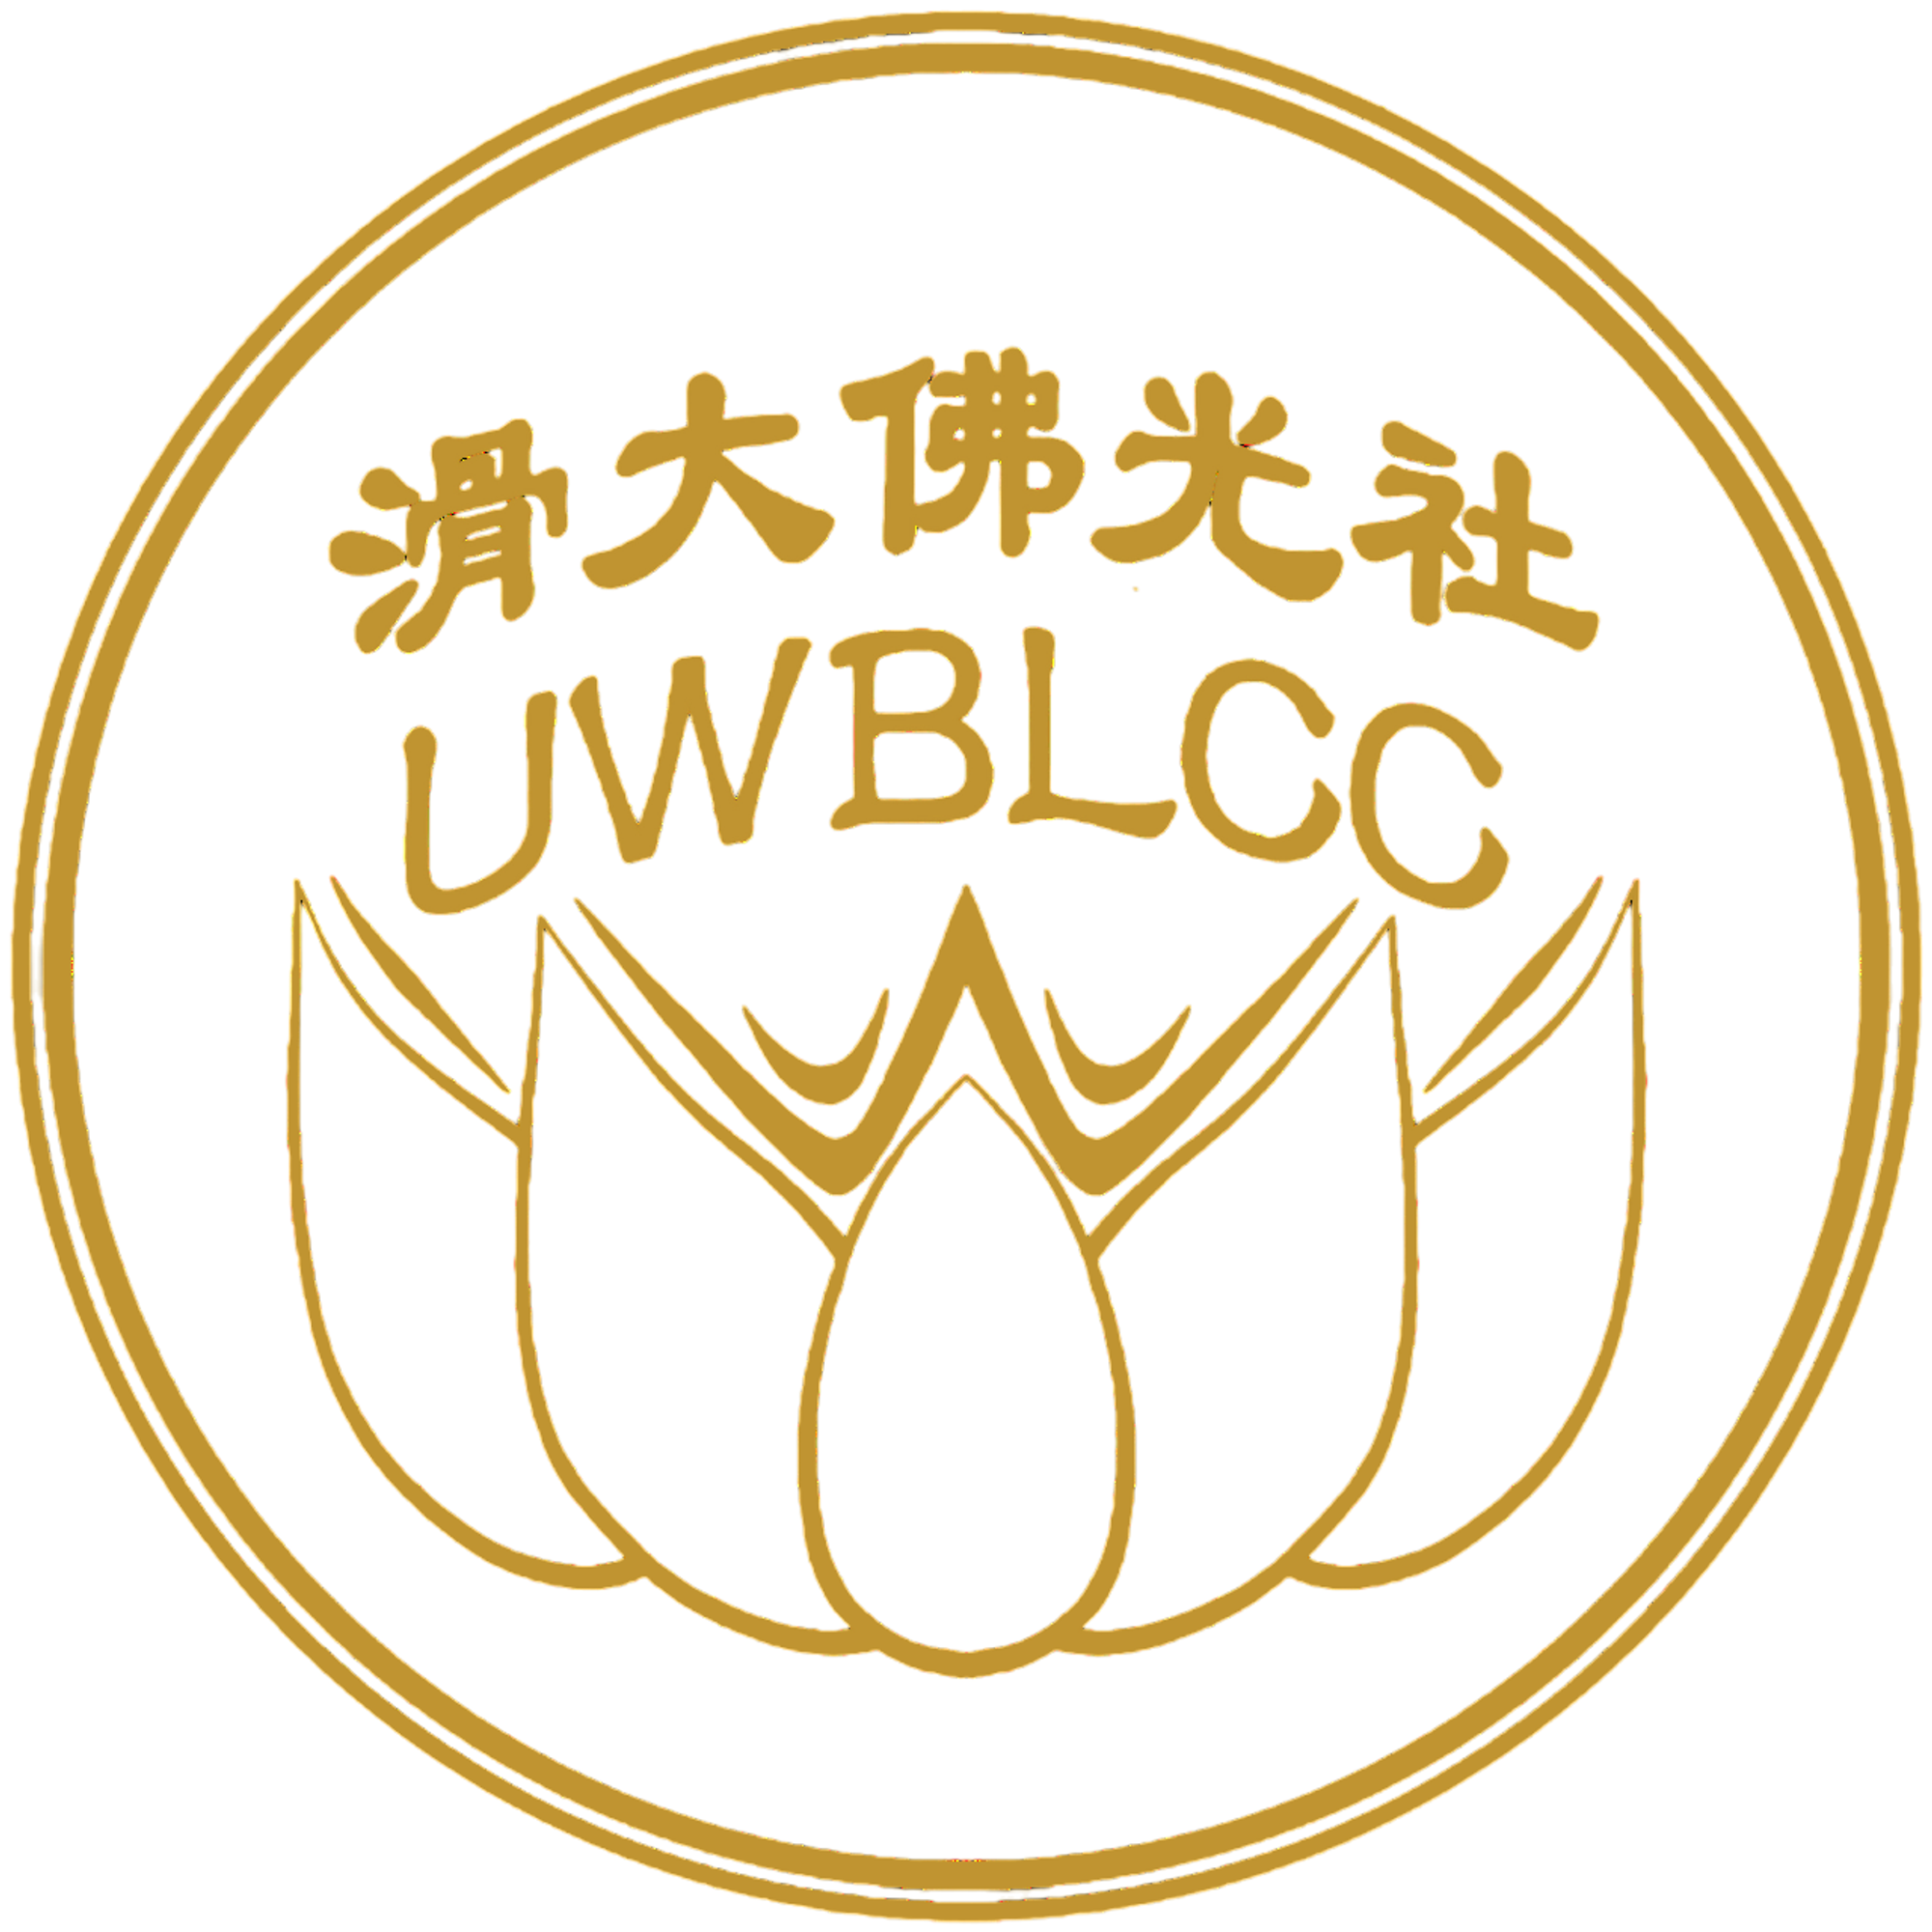 滑大佛光社 UWBLCC